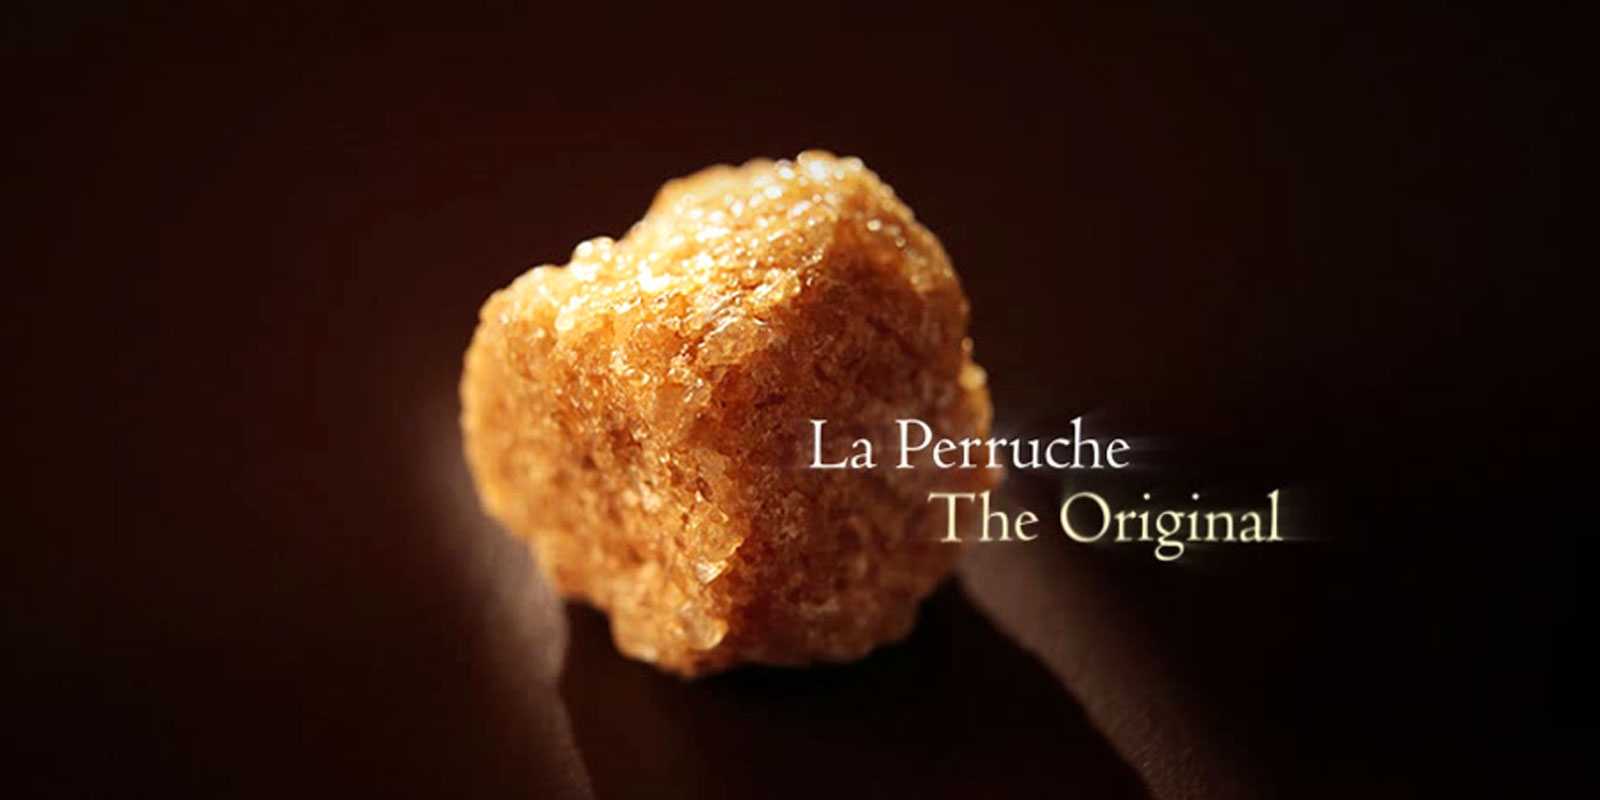 La Perruche - roersukker La Perruche er et eksepsjonelt produkt, med en spesiell smak som vil glede alle de som setter pris pa fin og sofistikert smak. Ganske enkelt fremmaner det ren nytelse i sansene dine. La Perruche kommer i uregelmessige sukkerbiter i hvitt eller gyldenbrunt. Krystallform i shakeren ogsa kjent som cassonade.